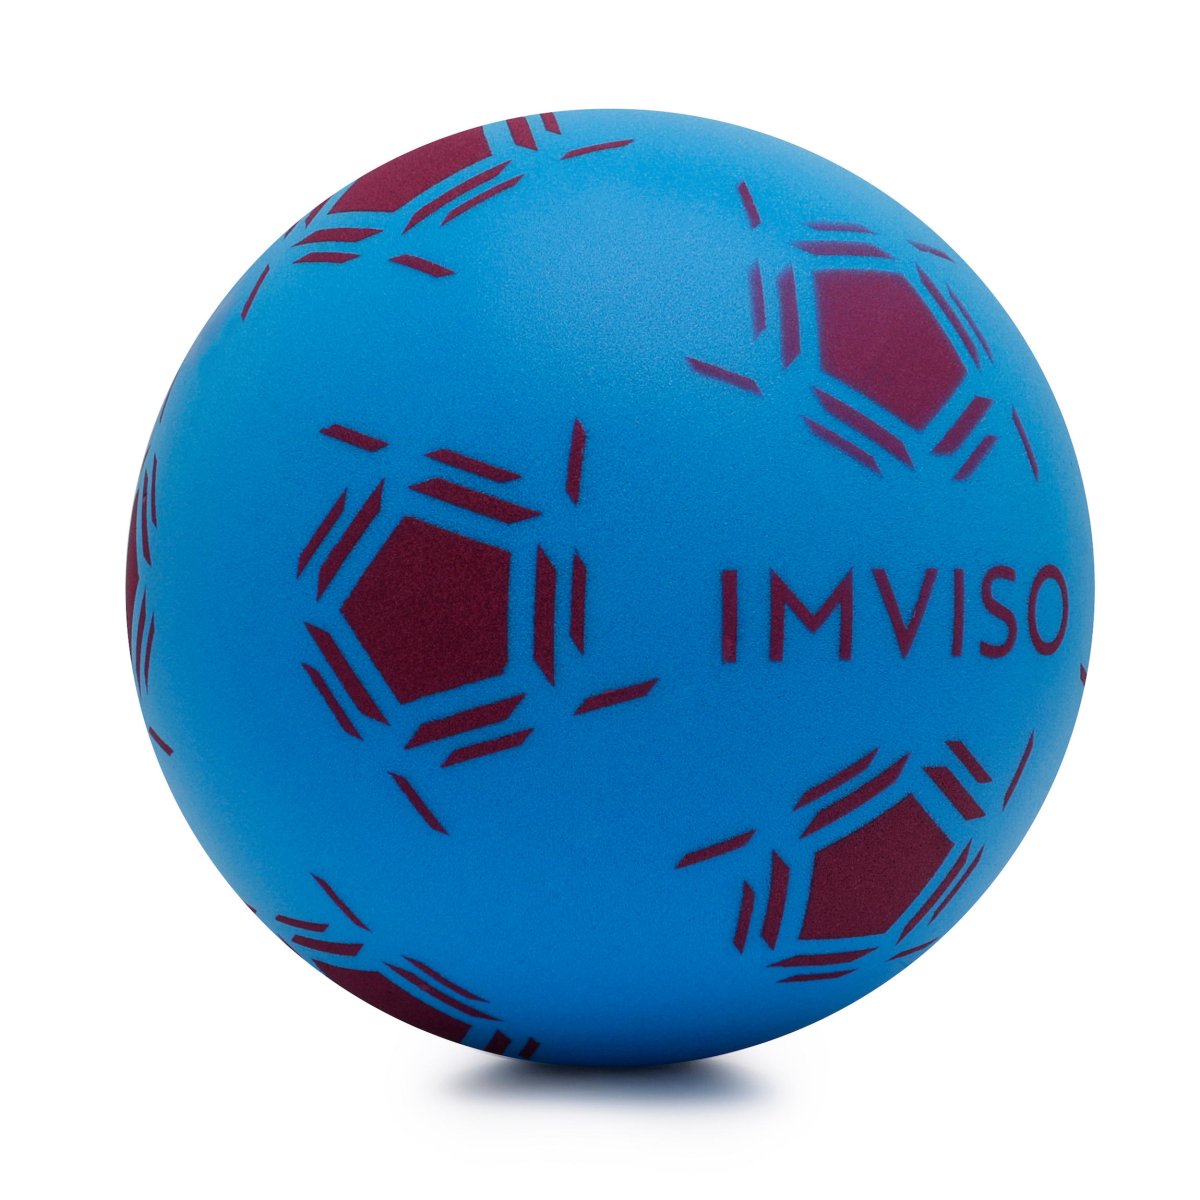 Мяч KIPSTA футбольный мяч f100 hybride, размер 3